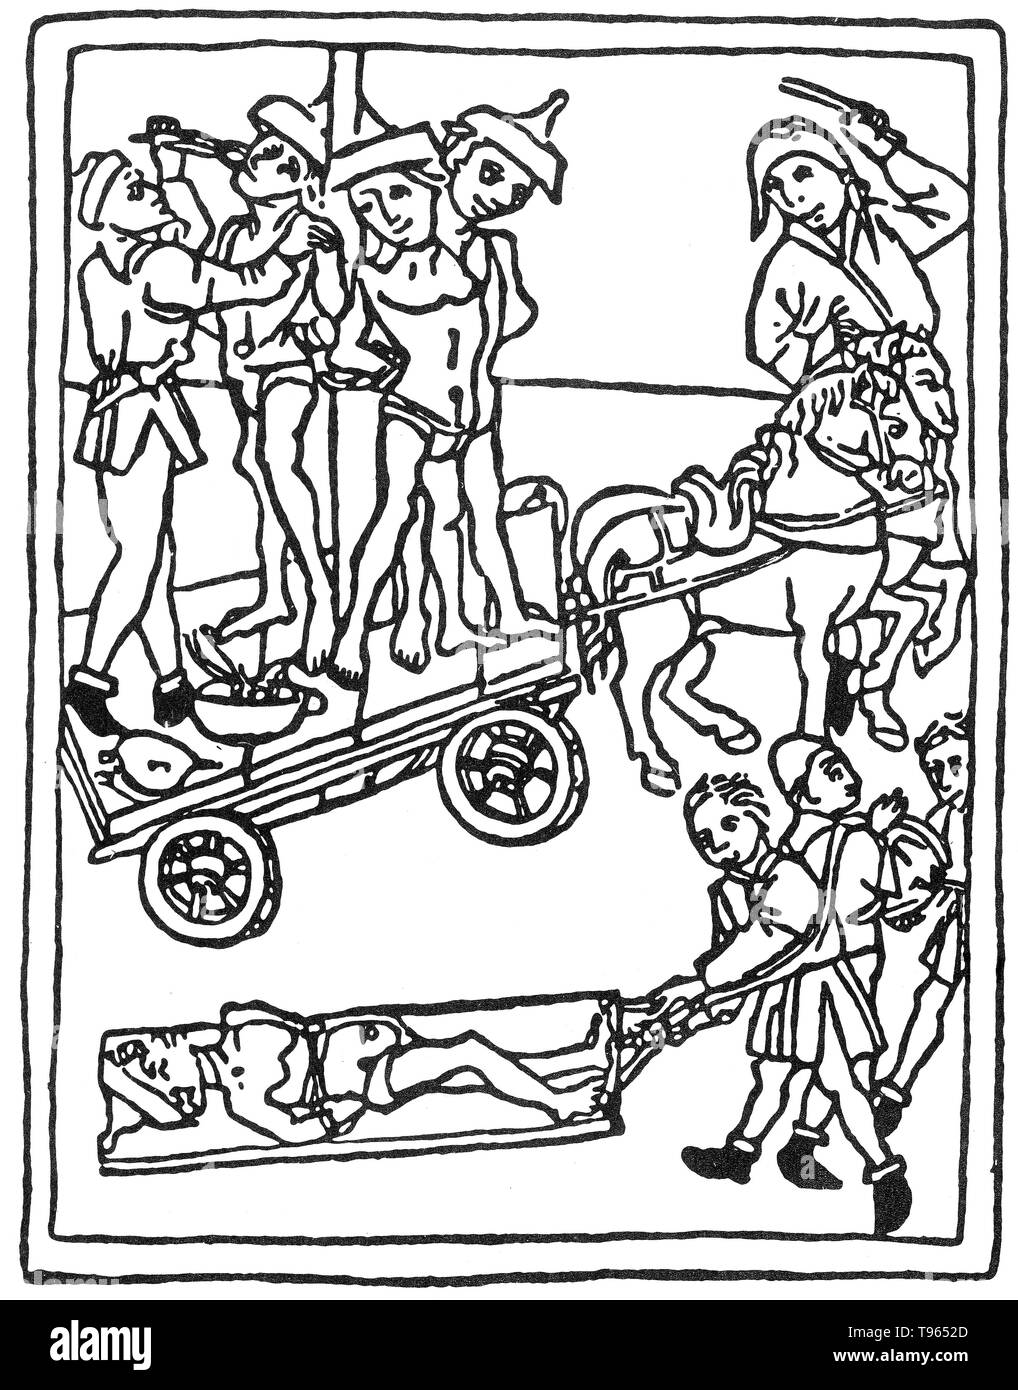 Folterung von Juden in Granada von der Inquisition als Ketzer angeklagt und Täter der schwarzen Magie. Amputation und Gewebeentnahme haben solange Formen der Folter eingesetzt. Folterknechte allgemein Fingernägel, Zähne und Ziffern von Opfer zu entfernen, aber jeder Körper Teil könnte ein Ziel sein. Die spanische Inquisition wurde 1480 durch die Katholischen Könige Ferdinand II. von Aragón und Isabella I. gegründet Stockfoto